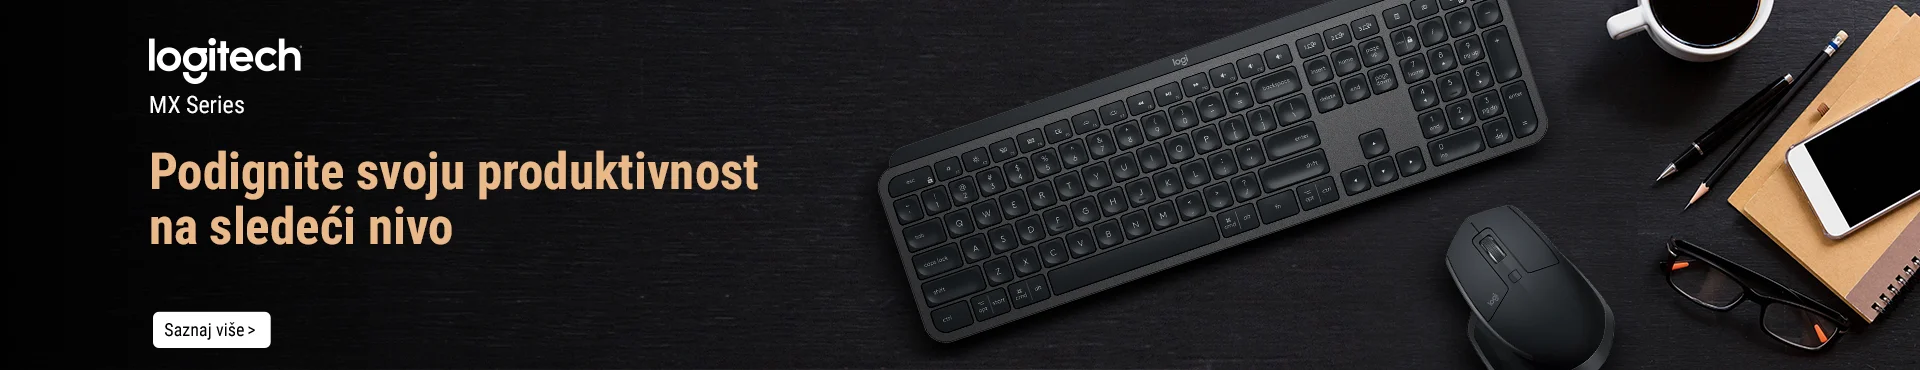 Tastature i miševi iz Logitech MX serije